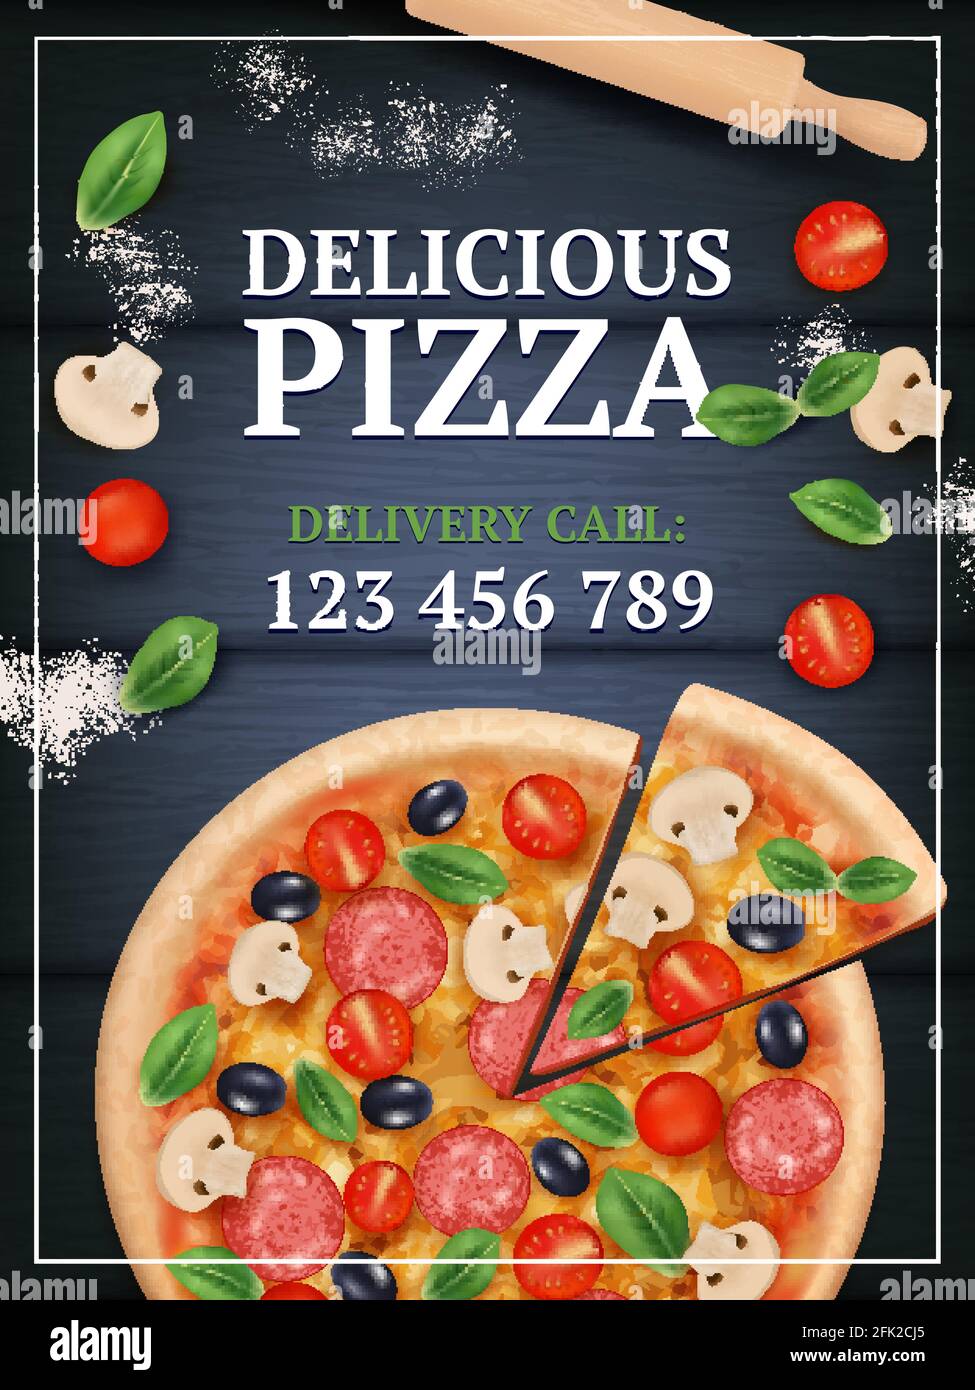 Affiche sur les pizzas. Tranché délicieux savoureux plat traditionnel italien avec légumes et vecteur de repas réaliste étiquette Illustration de Vecteur